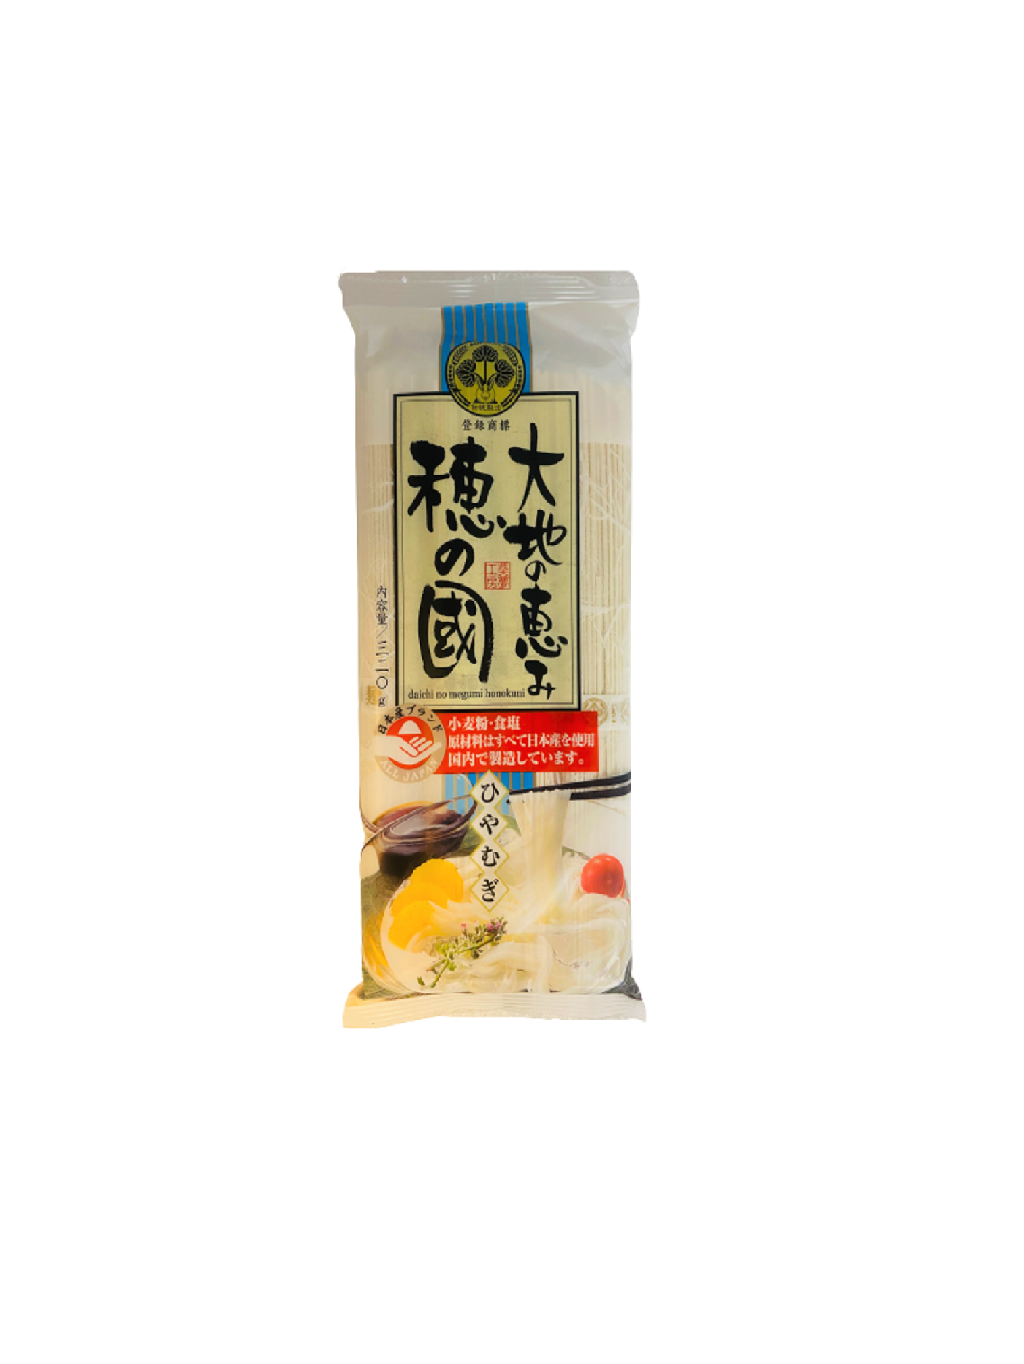 Daichi no Megumi Hiyamugi Noodles 320g